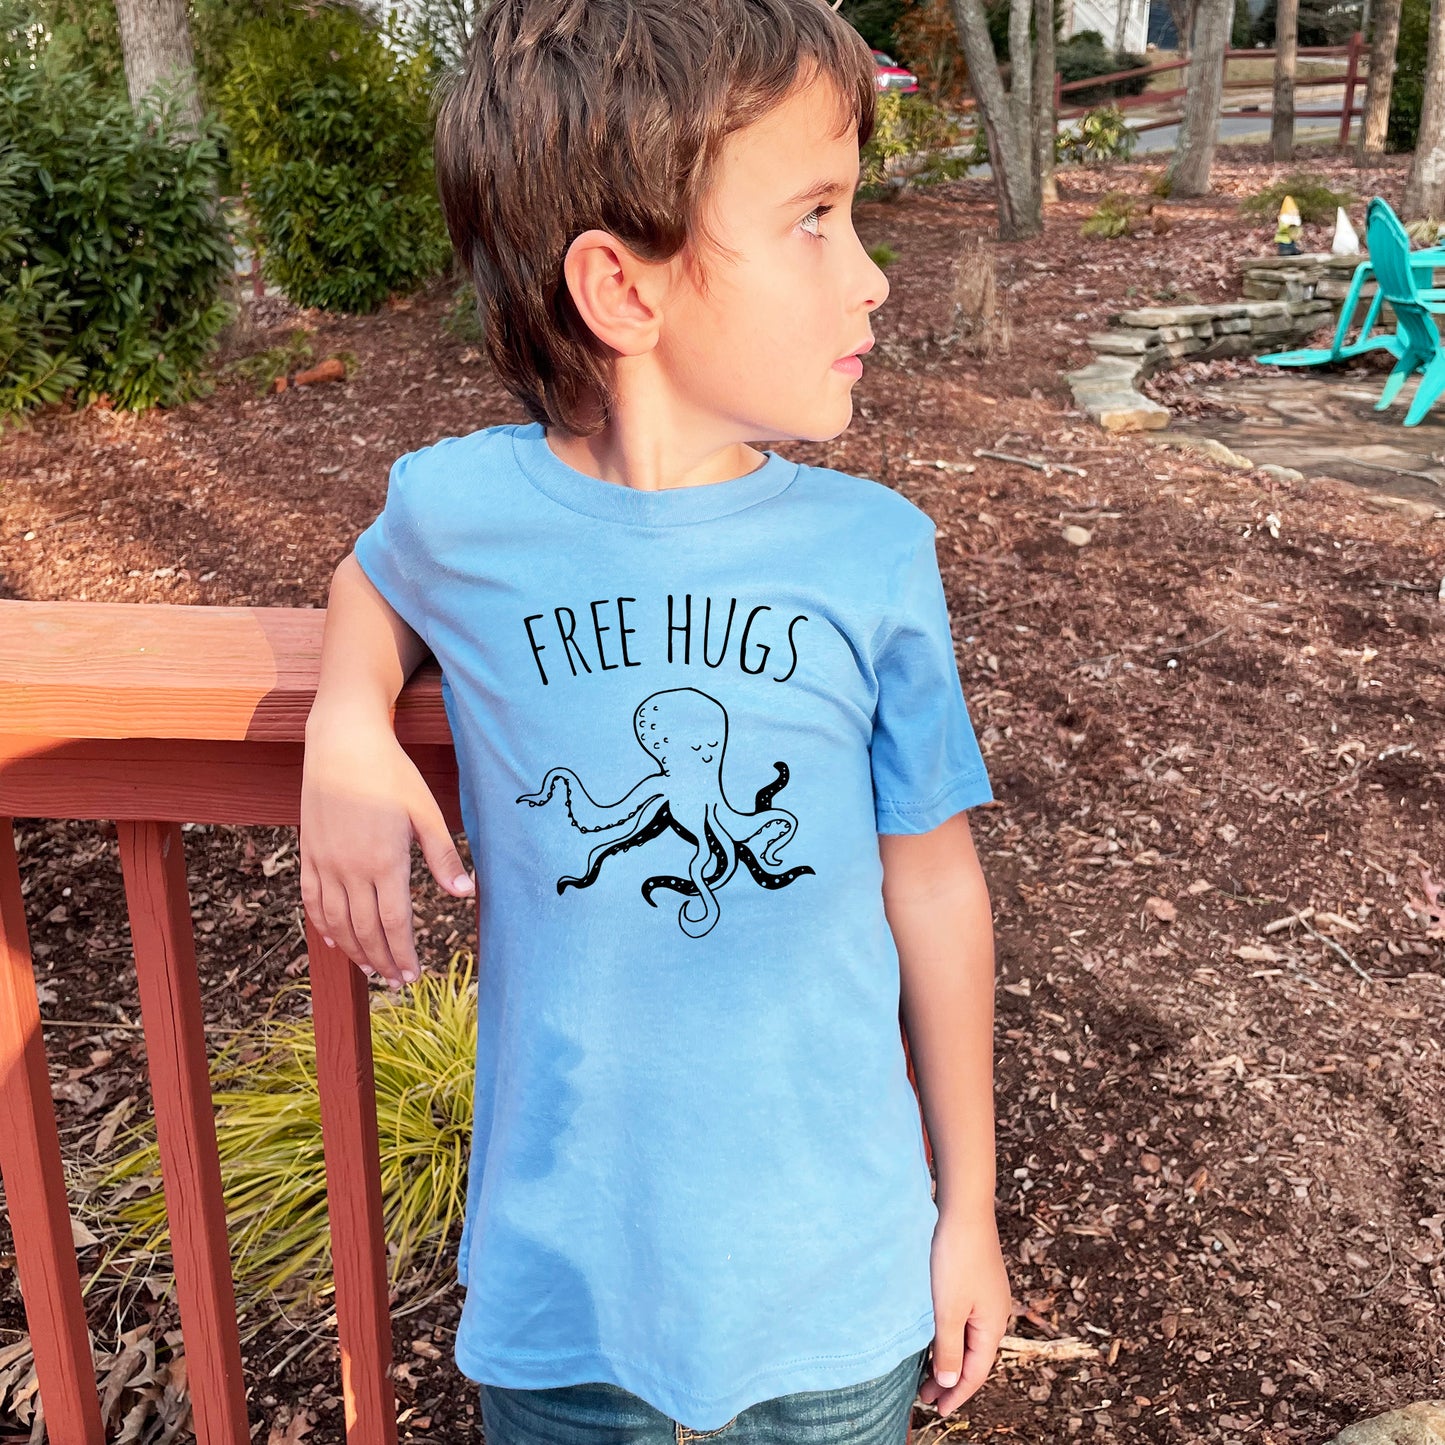 Free Hugs (Kids) - Kid's Tee - Columbia Blue or Lavender